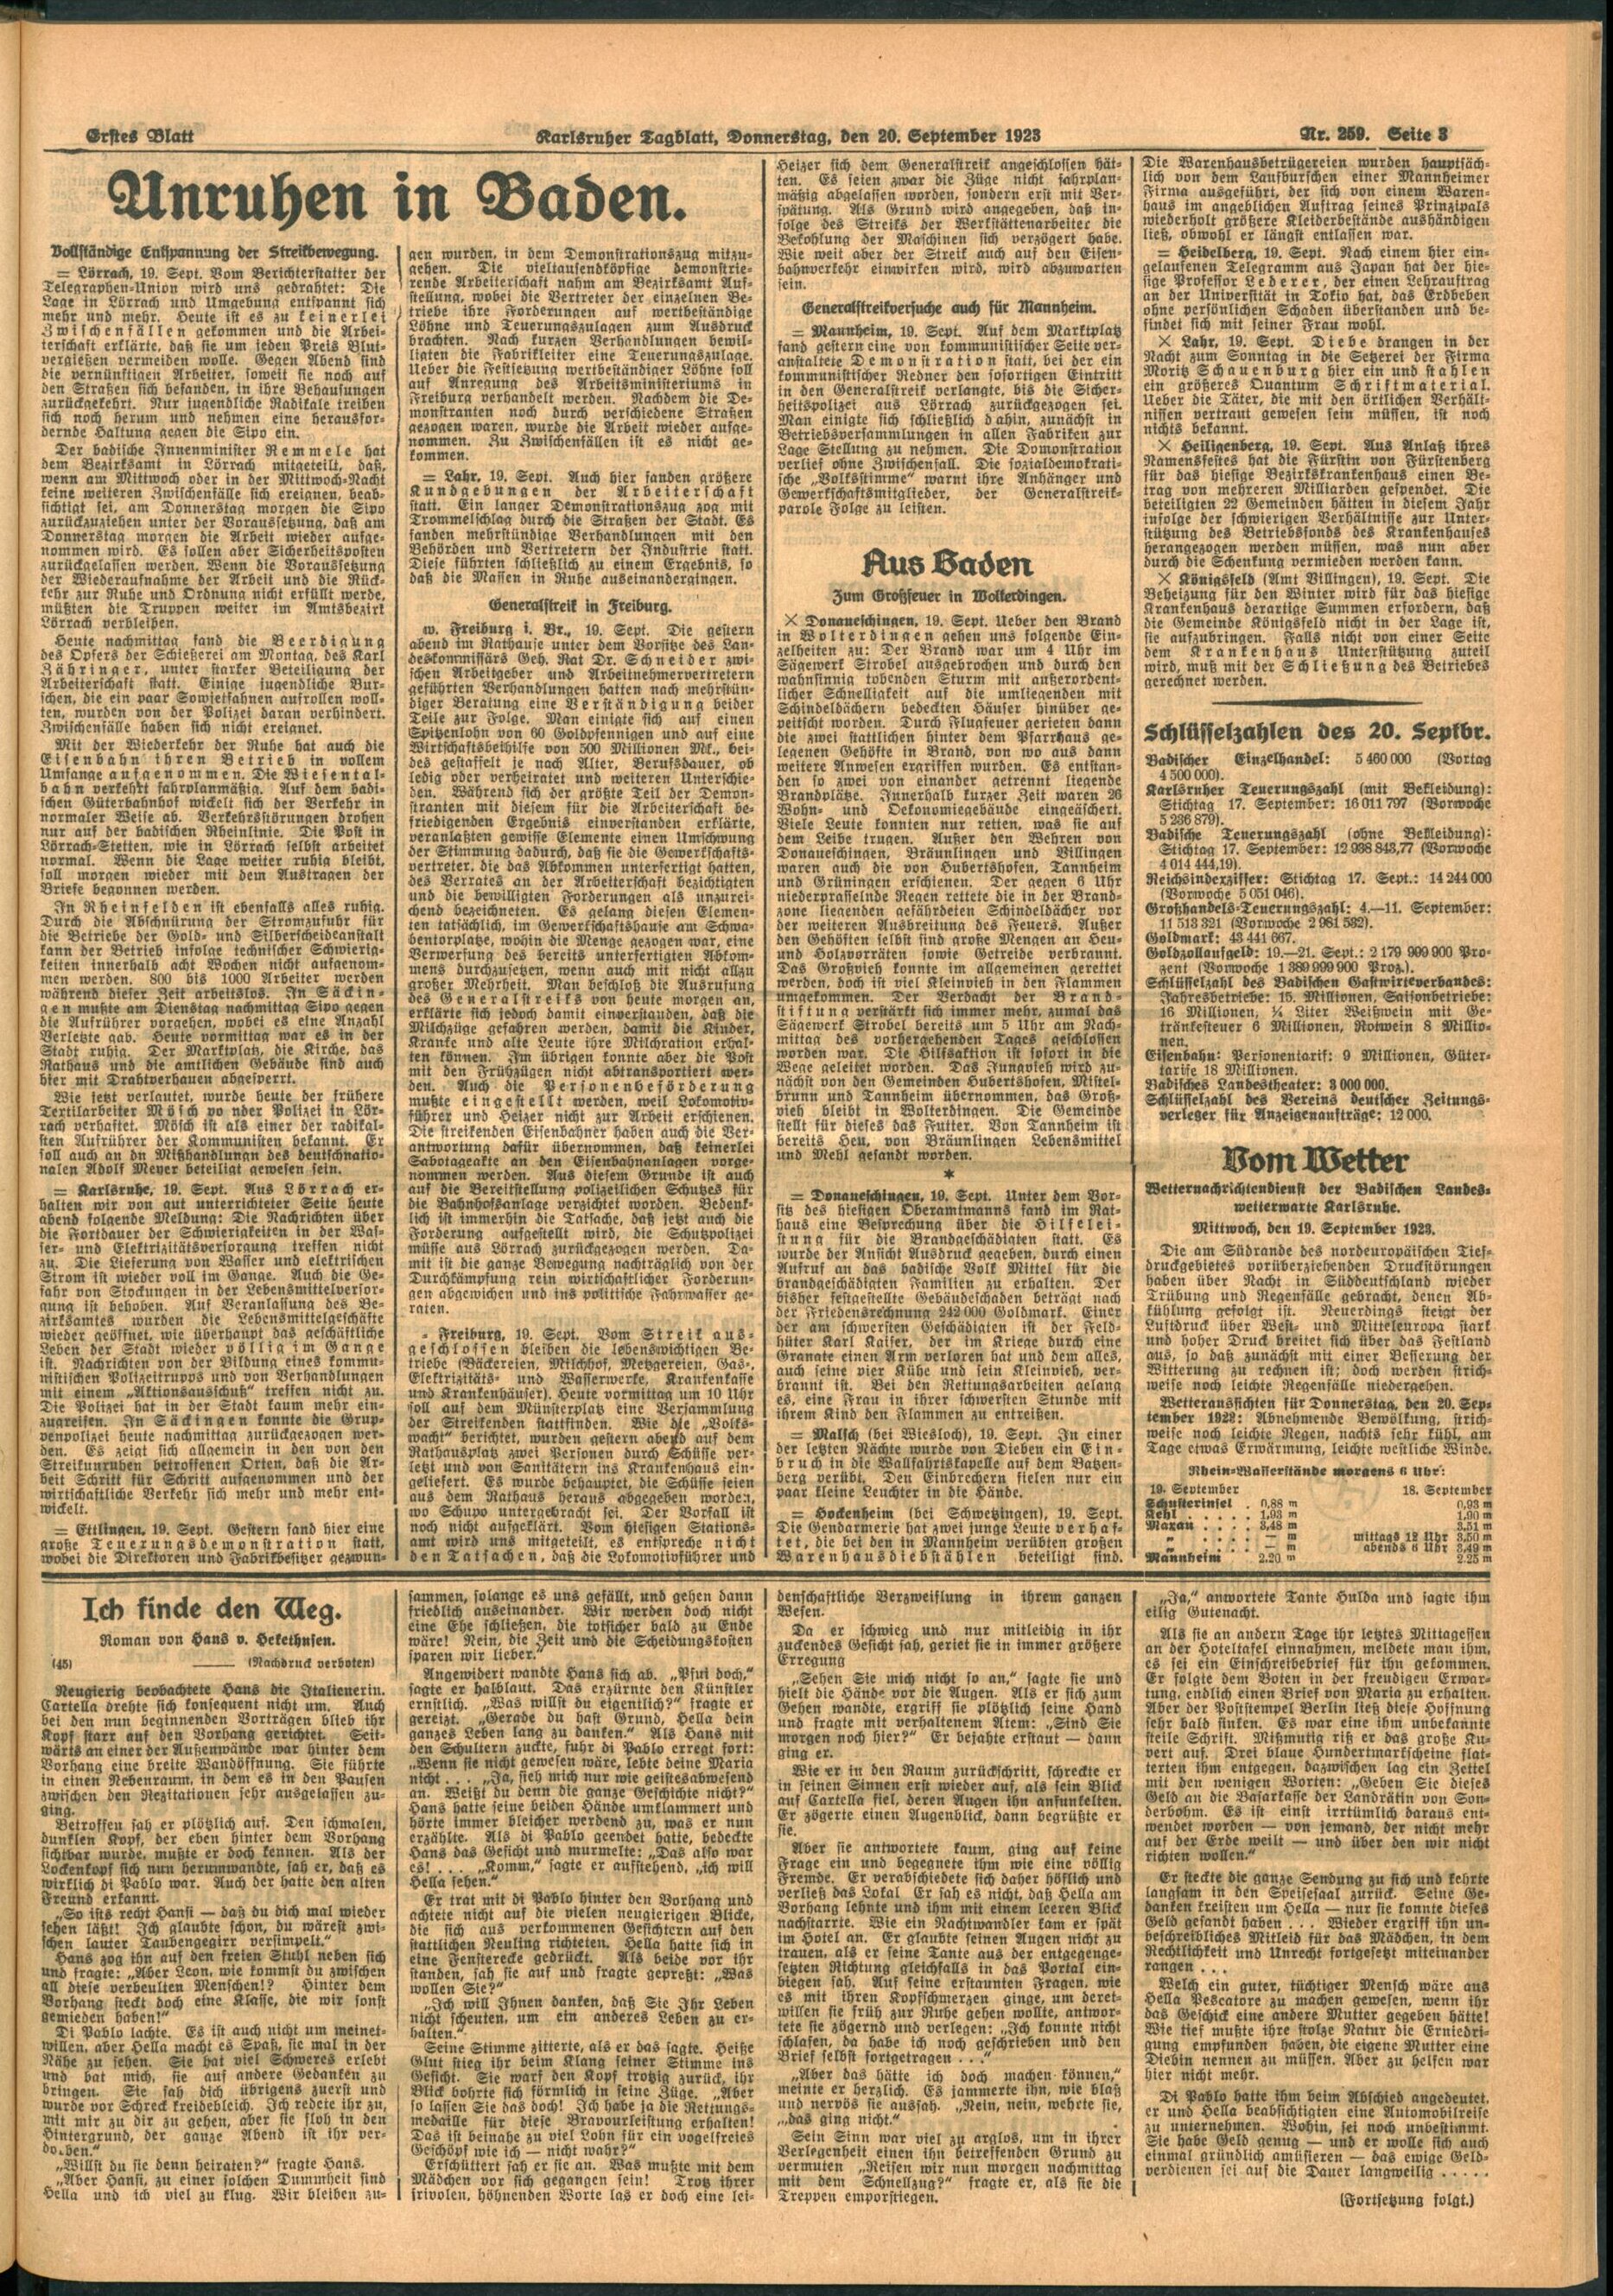 Der Screenshot zeigt eine Seite aus dem Karlsruher Tagblatt vom 20. September 1923.